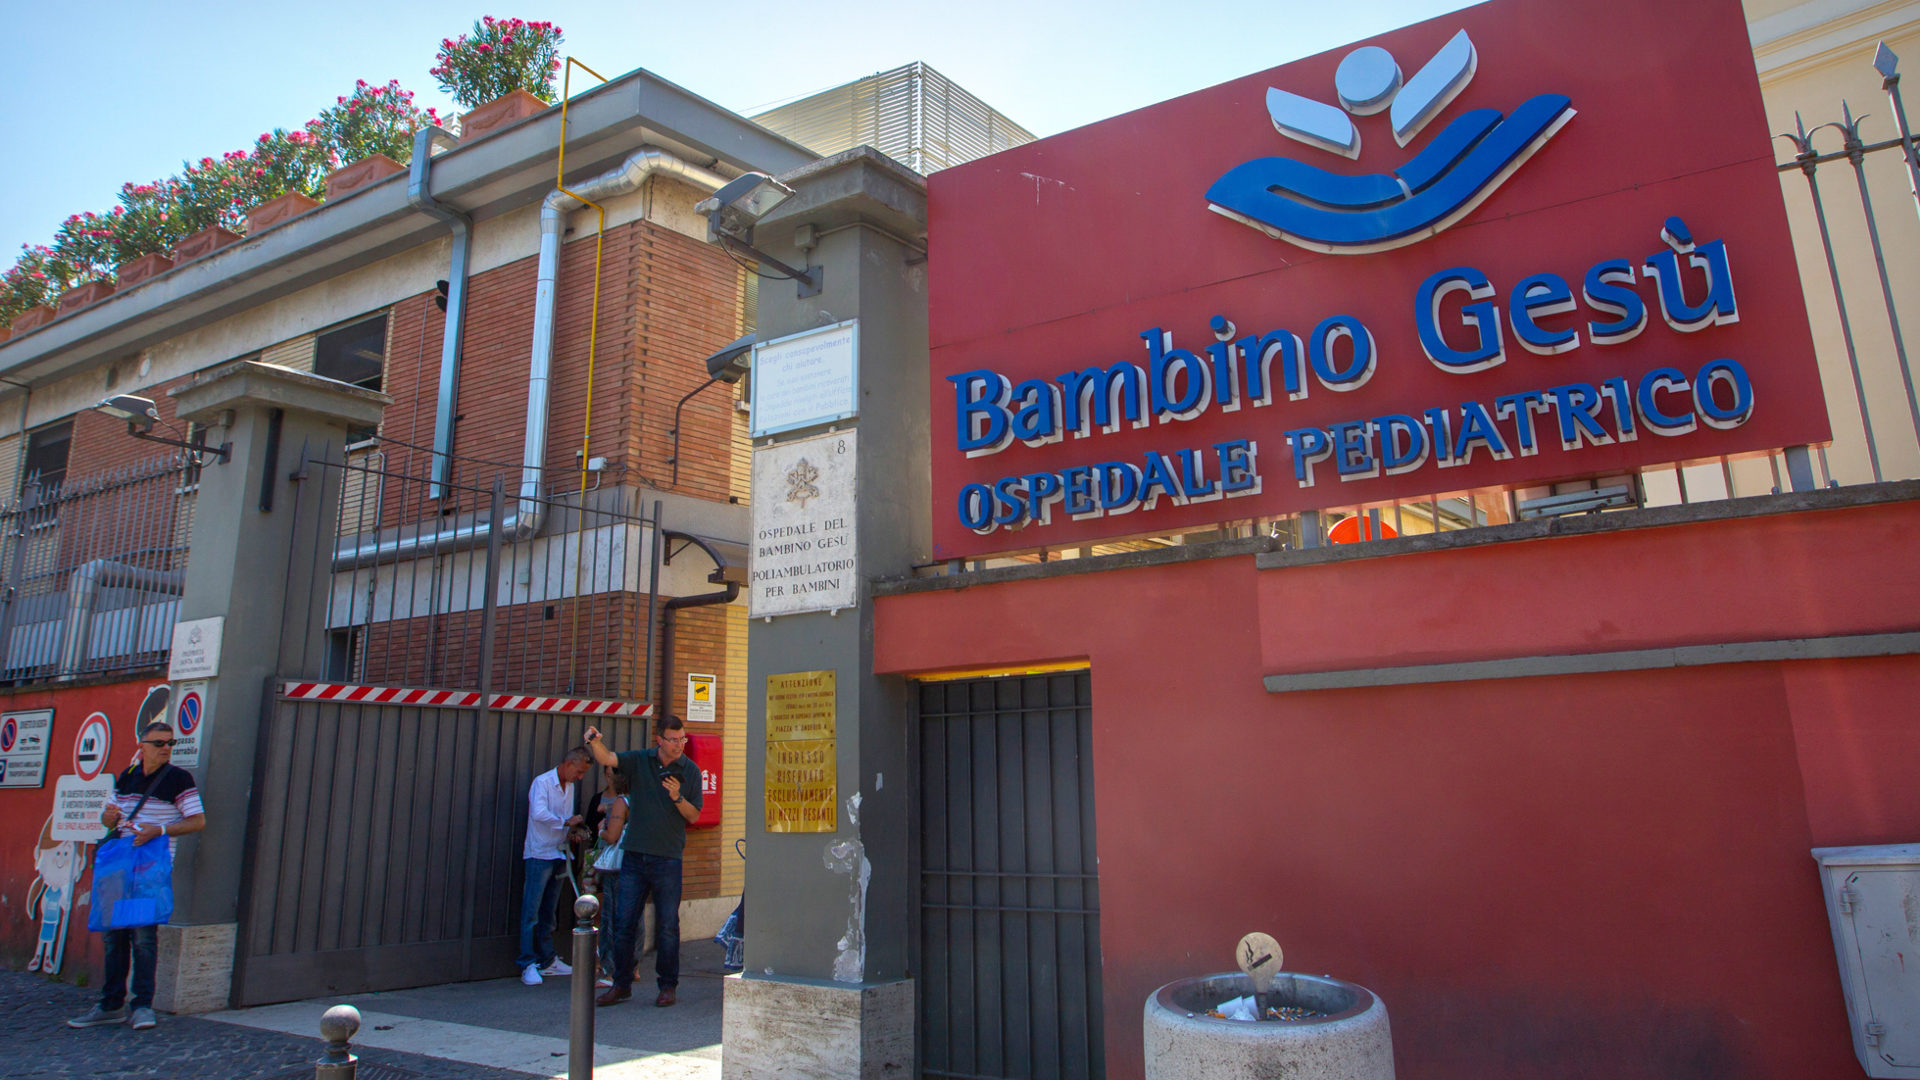 Eingang zur vatikanischen Kinderklinik "Bambino Gesu" in Rom